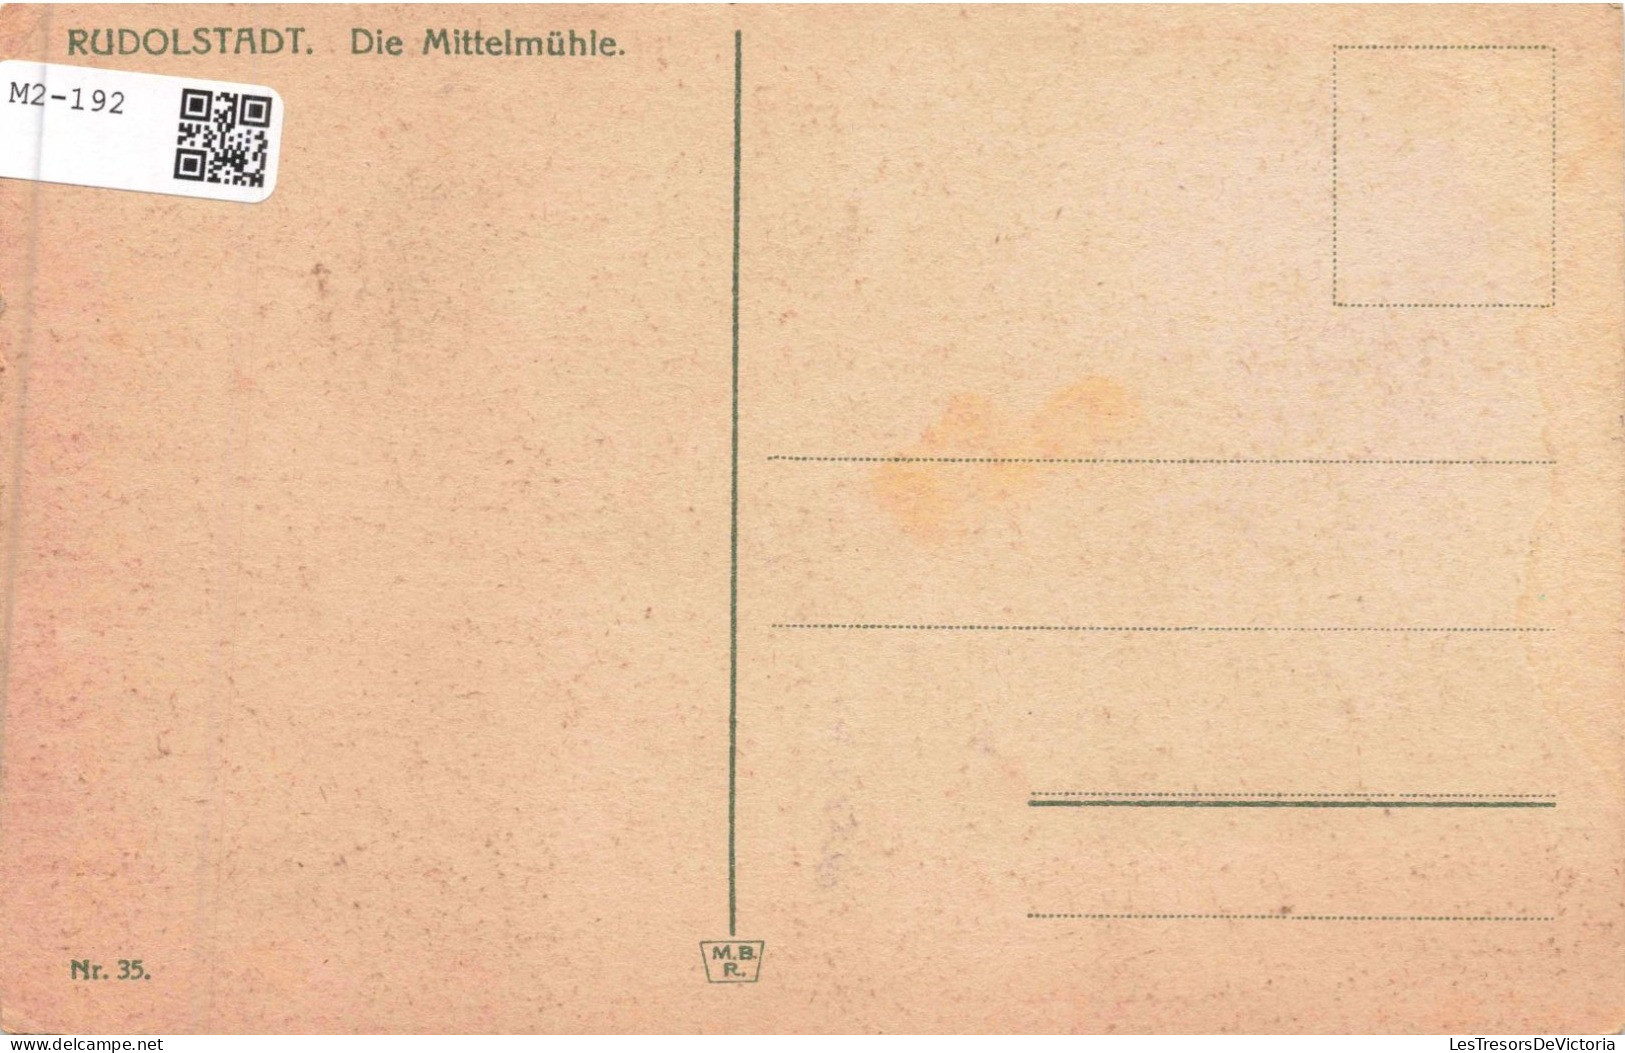 ALLEMANGE - Rudolstadt - Die Mittelmühe - Carte Postale Ancienne - Saalfeld